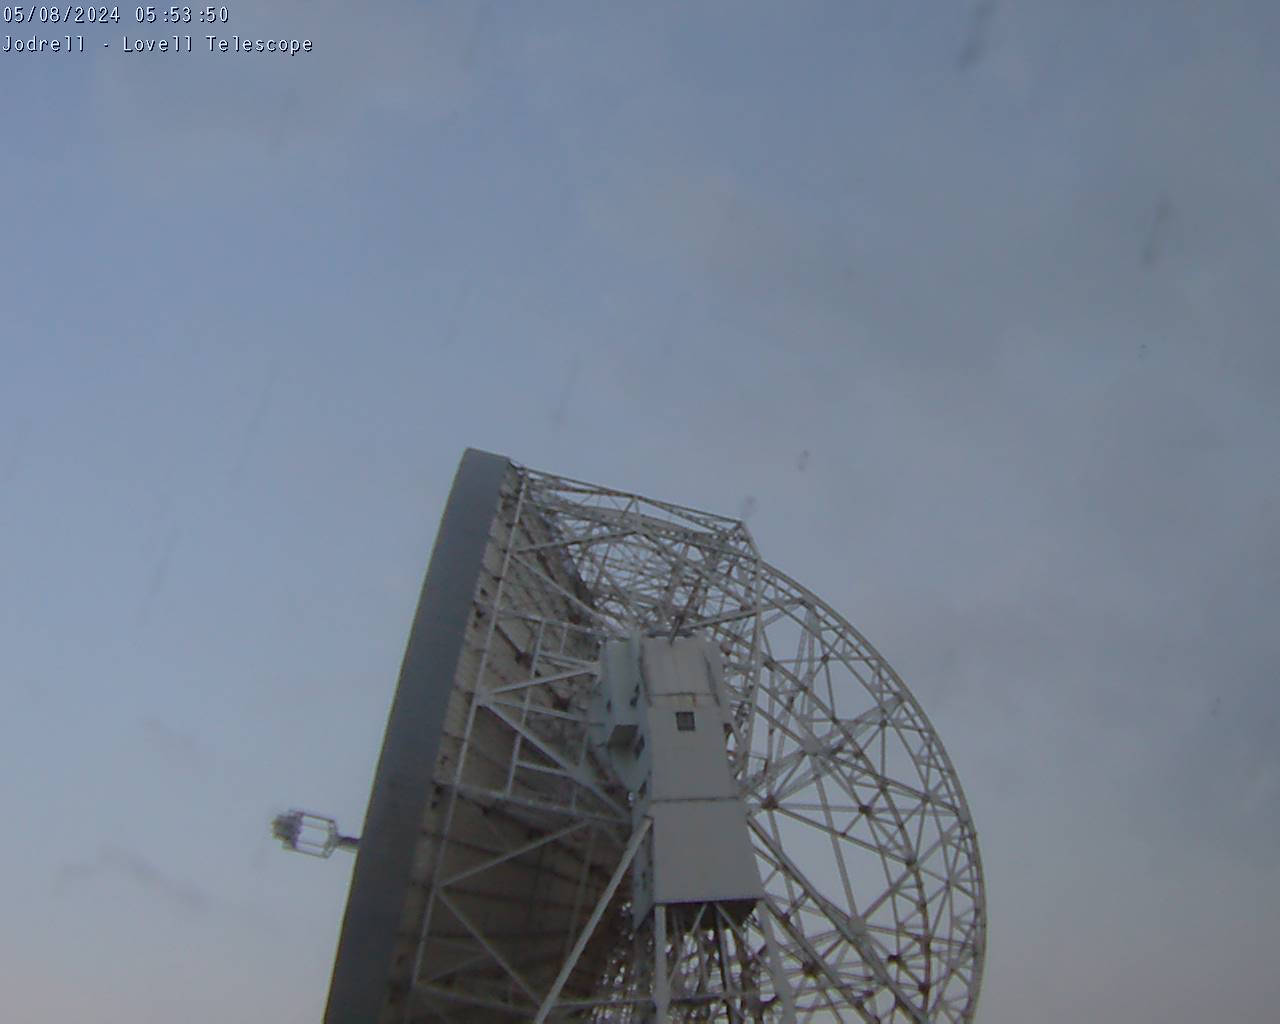 Jodrell Bank Centre for Astrophysics - Lovell Telescope Webcam